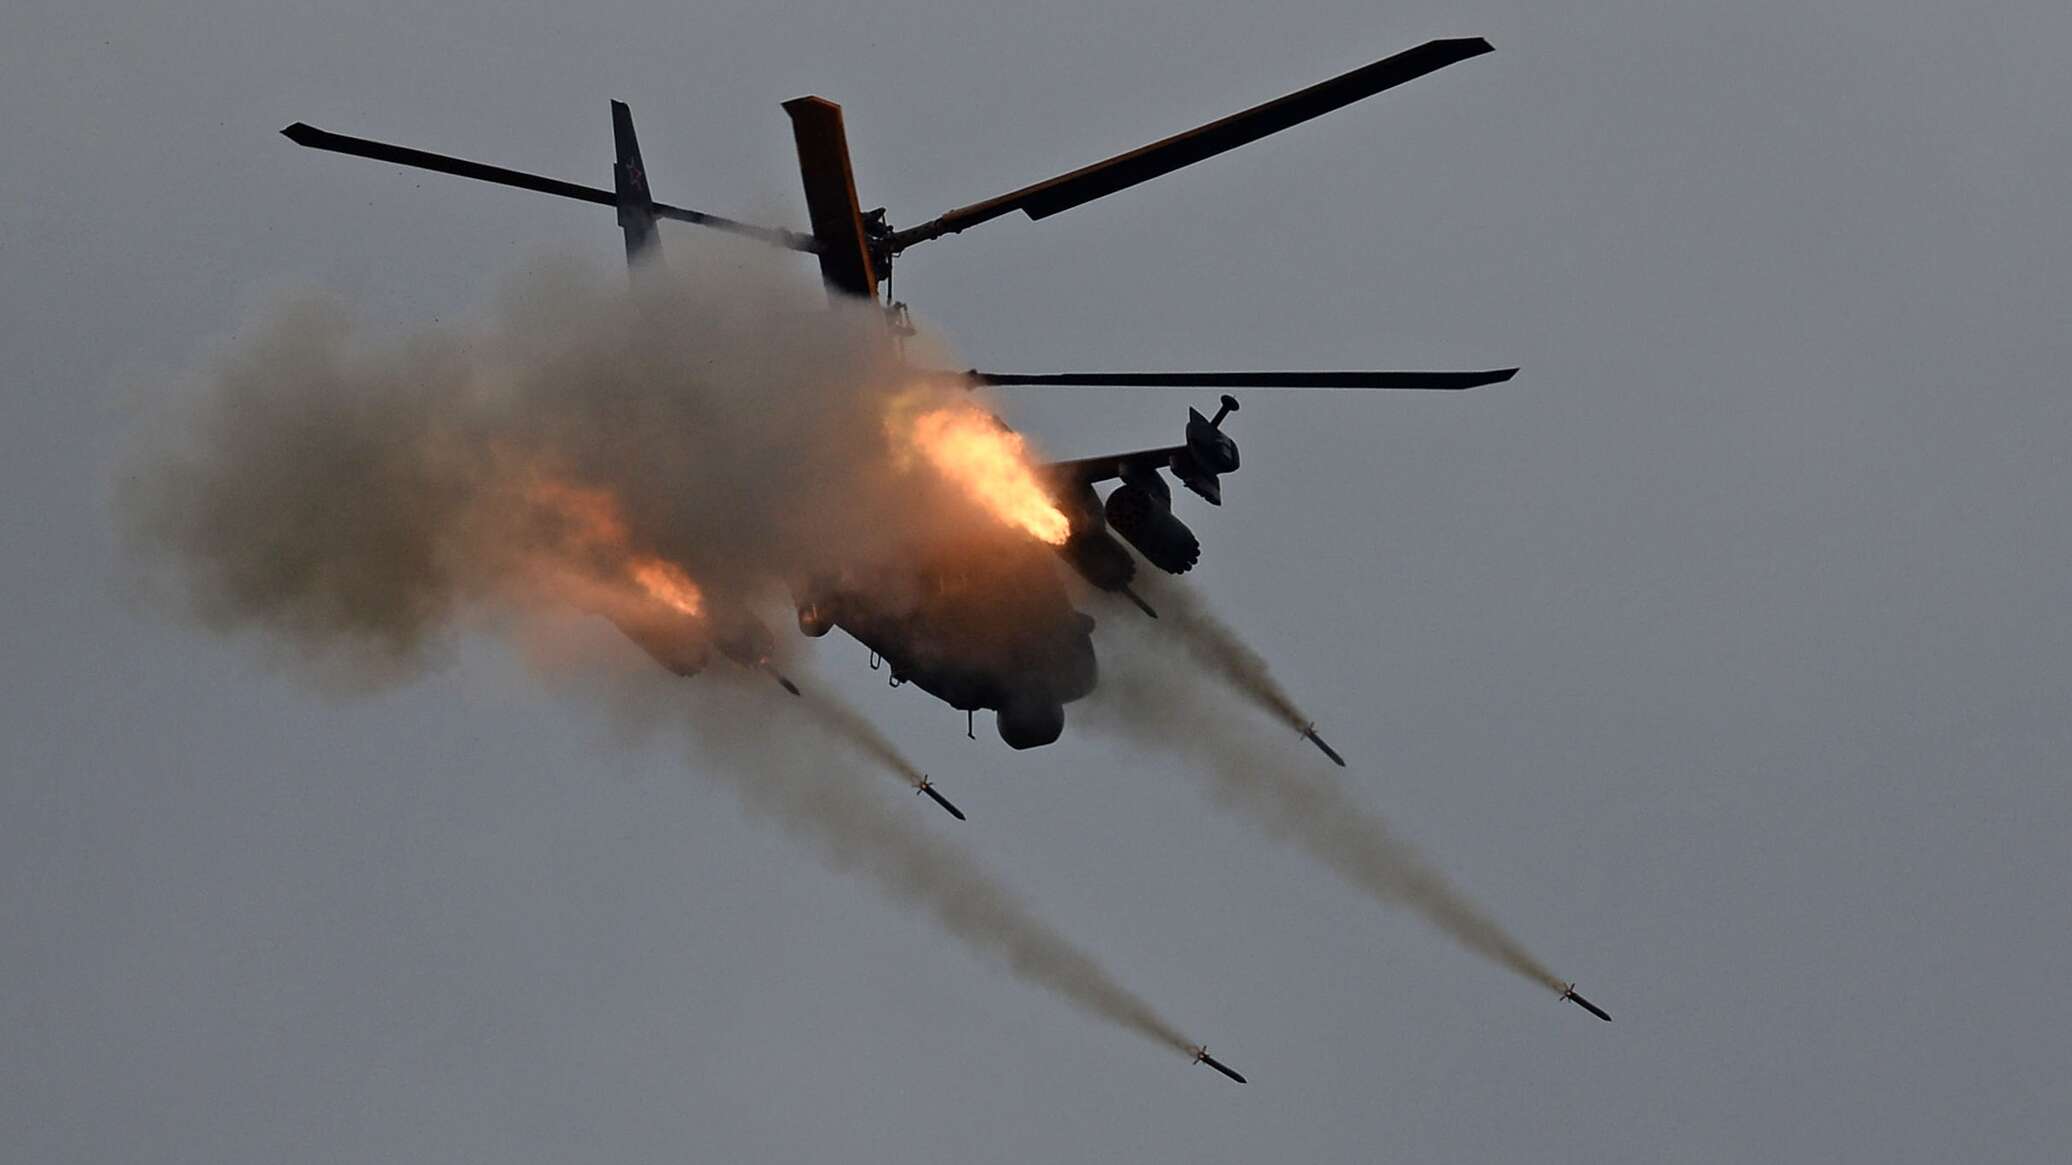 "مي-28إن" بغطاء من حوامات "كا-52" و"مي-8" تهاجم نقاطا أوكرانية محصنة في كوبيانسك... فيديو